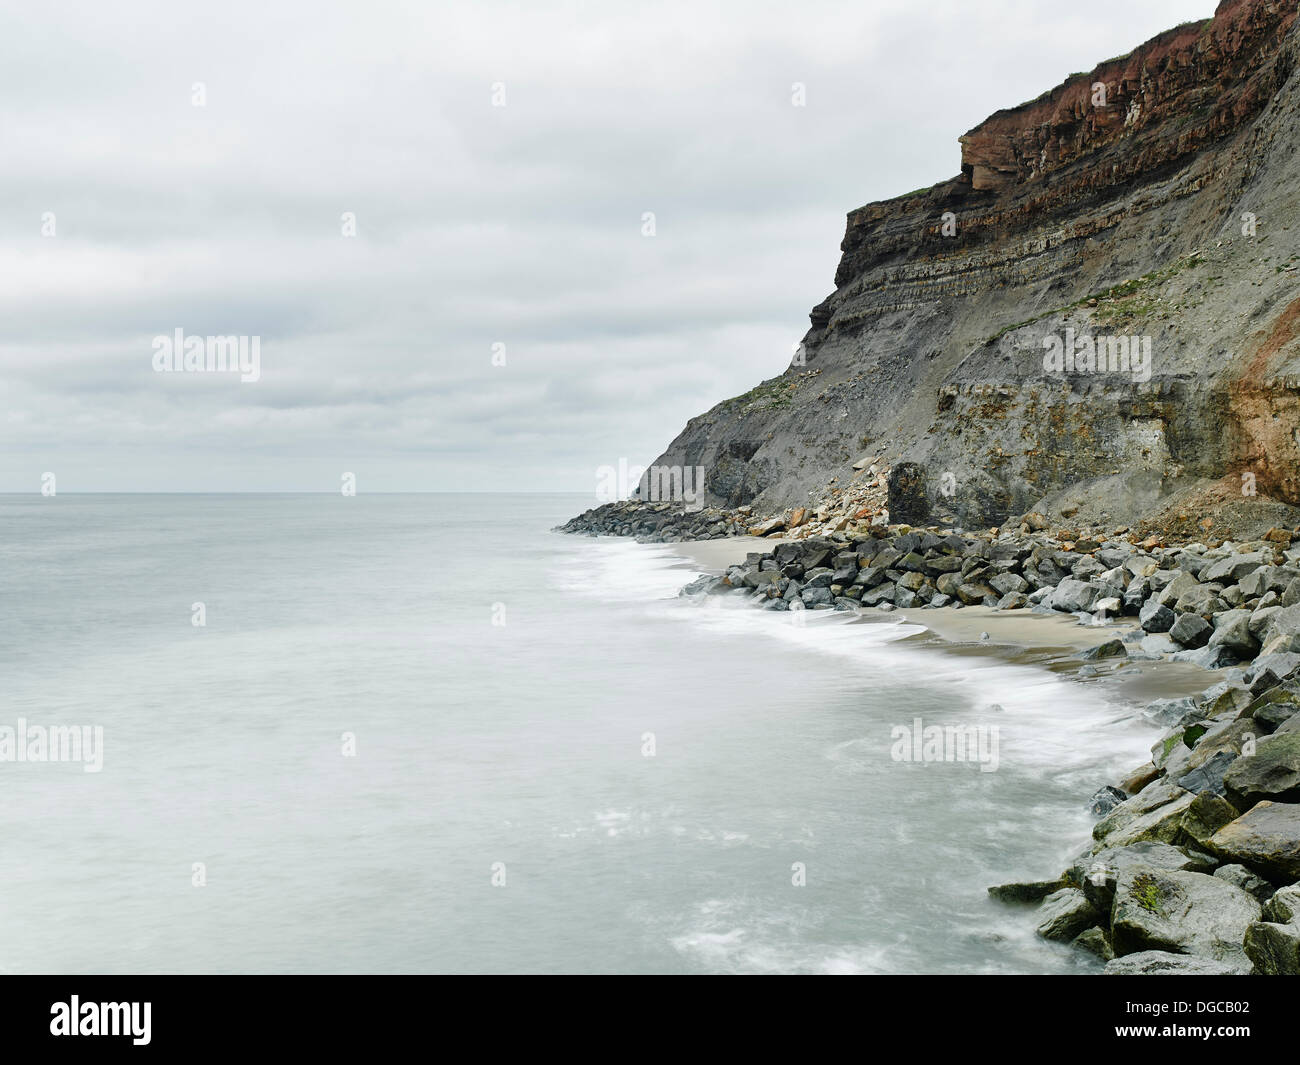 Rugged coastline of Whitby, England Stock Photo